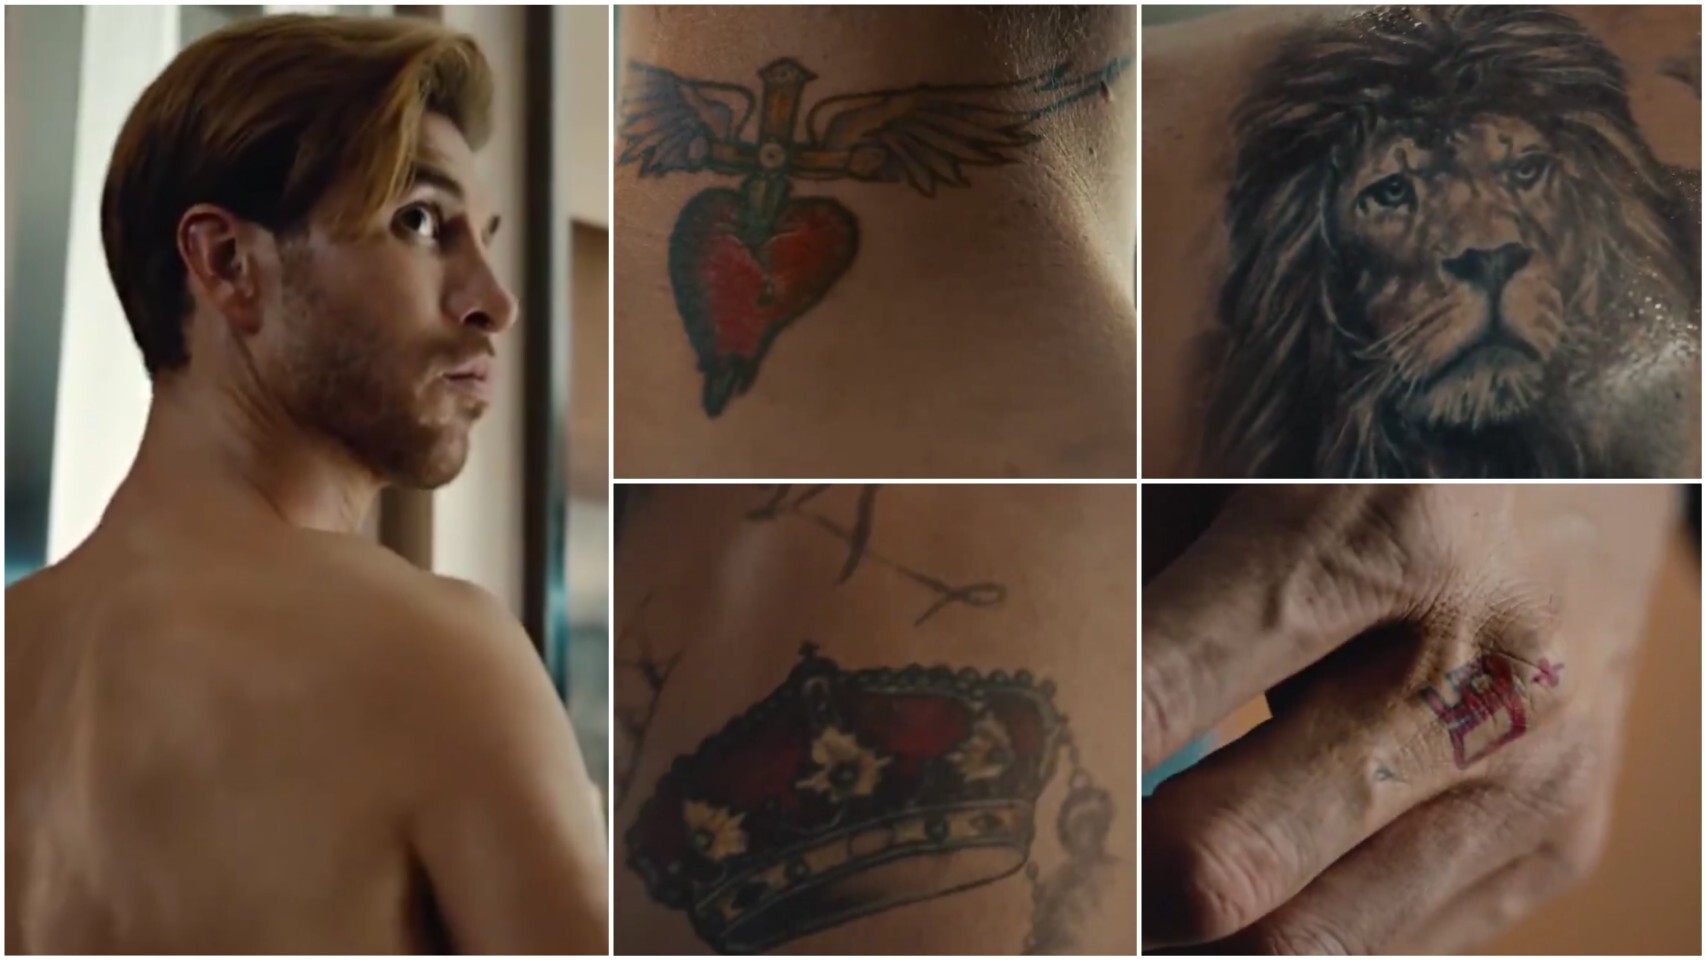 Los tatuajes de Sergio Ramos